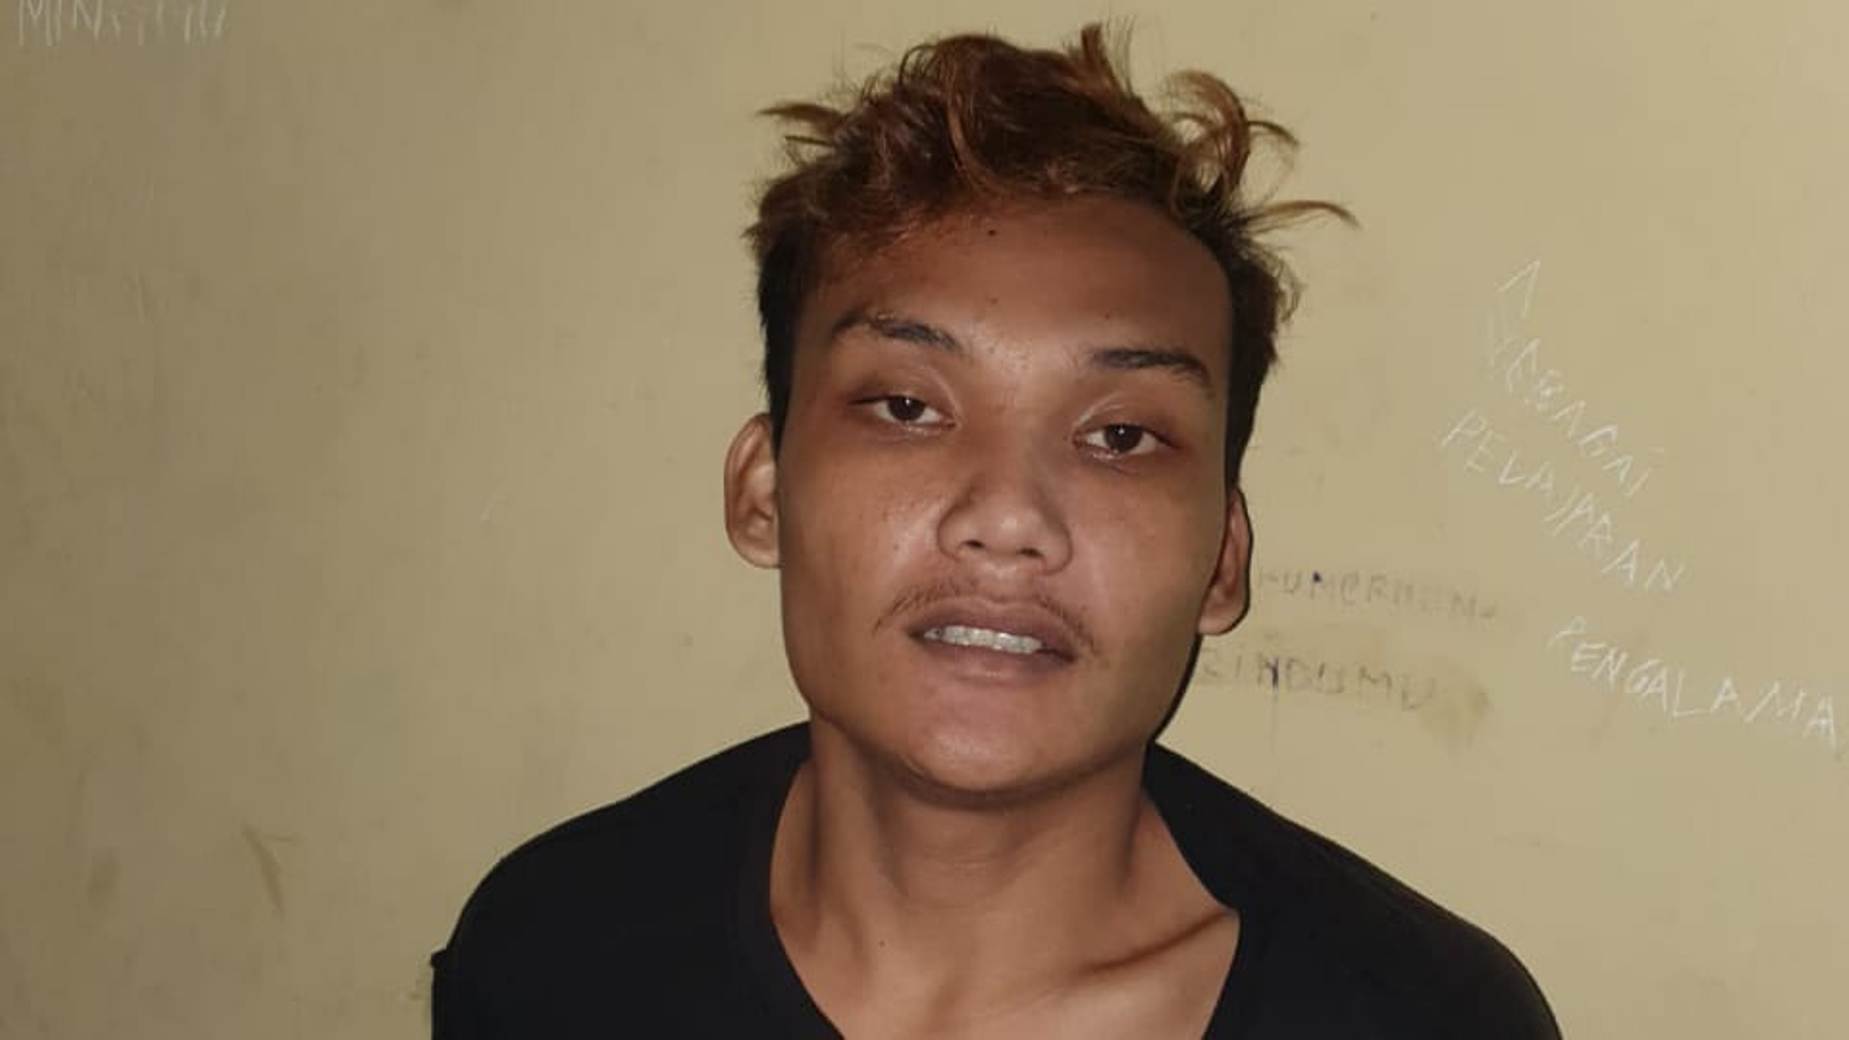 Ketahuan, Bandit Cekik Anak Pemilik Toko, Kini Didor